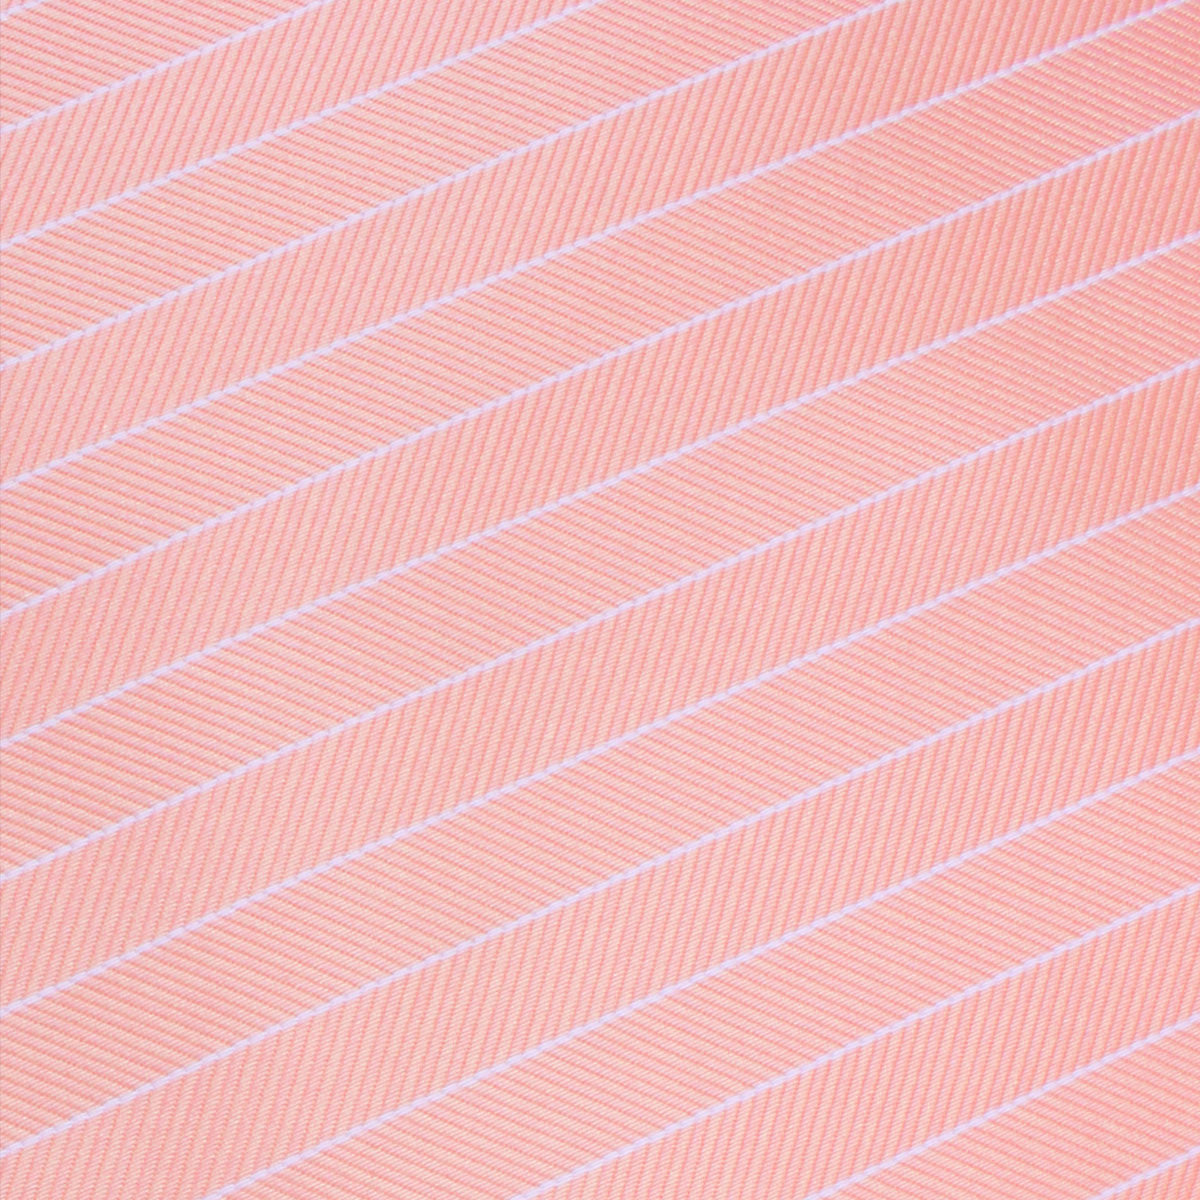 Blush Pink Herringbone Pinstripe Fabric Swatch